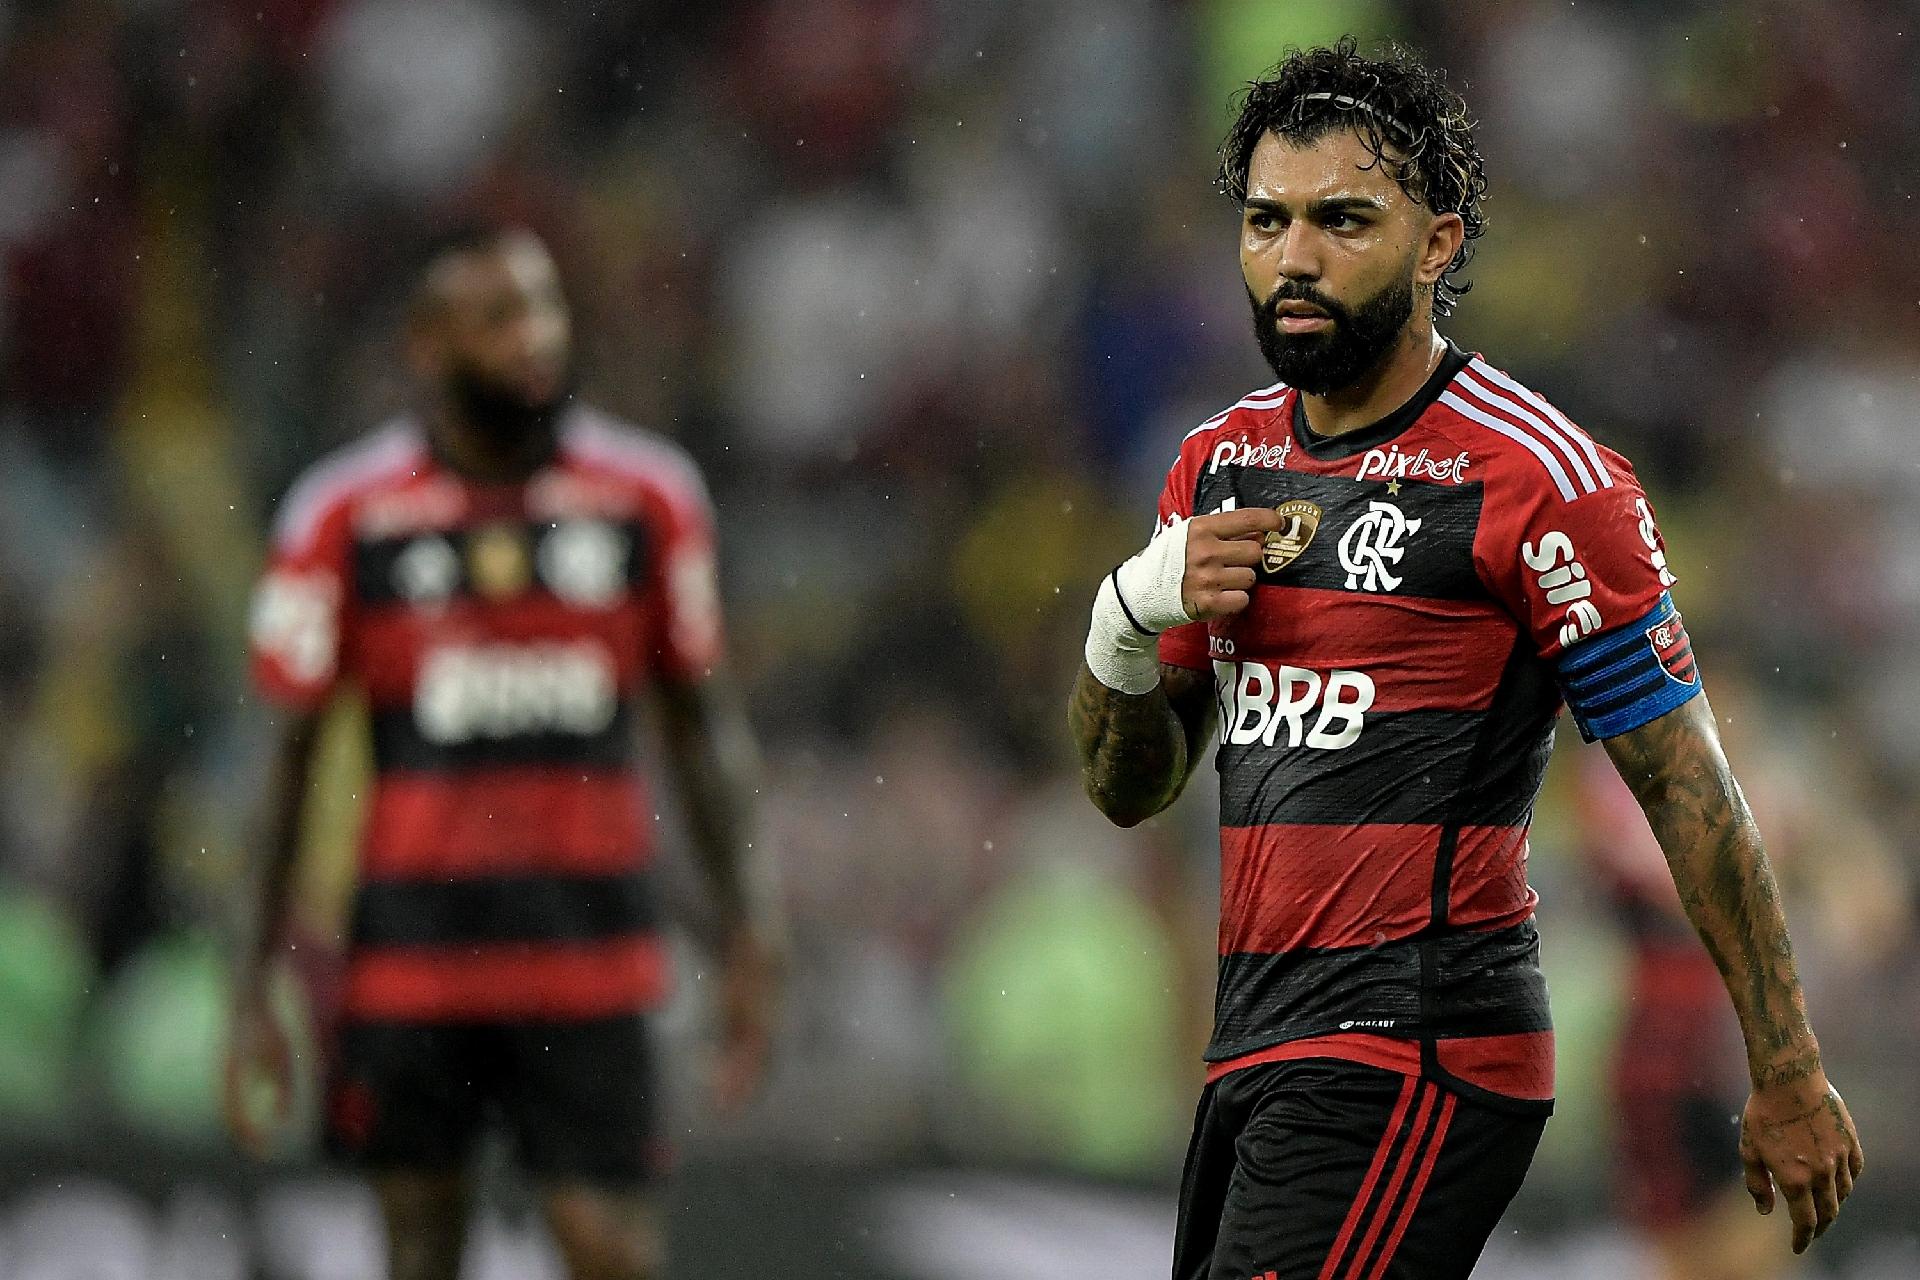 Maringá x Flamengo ao vivo e online, onde assistir, que horas é